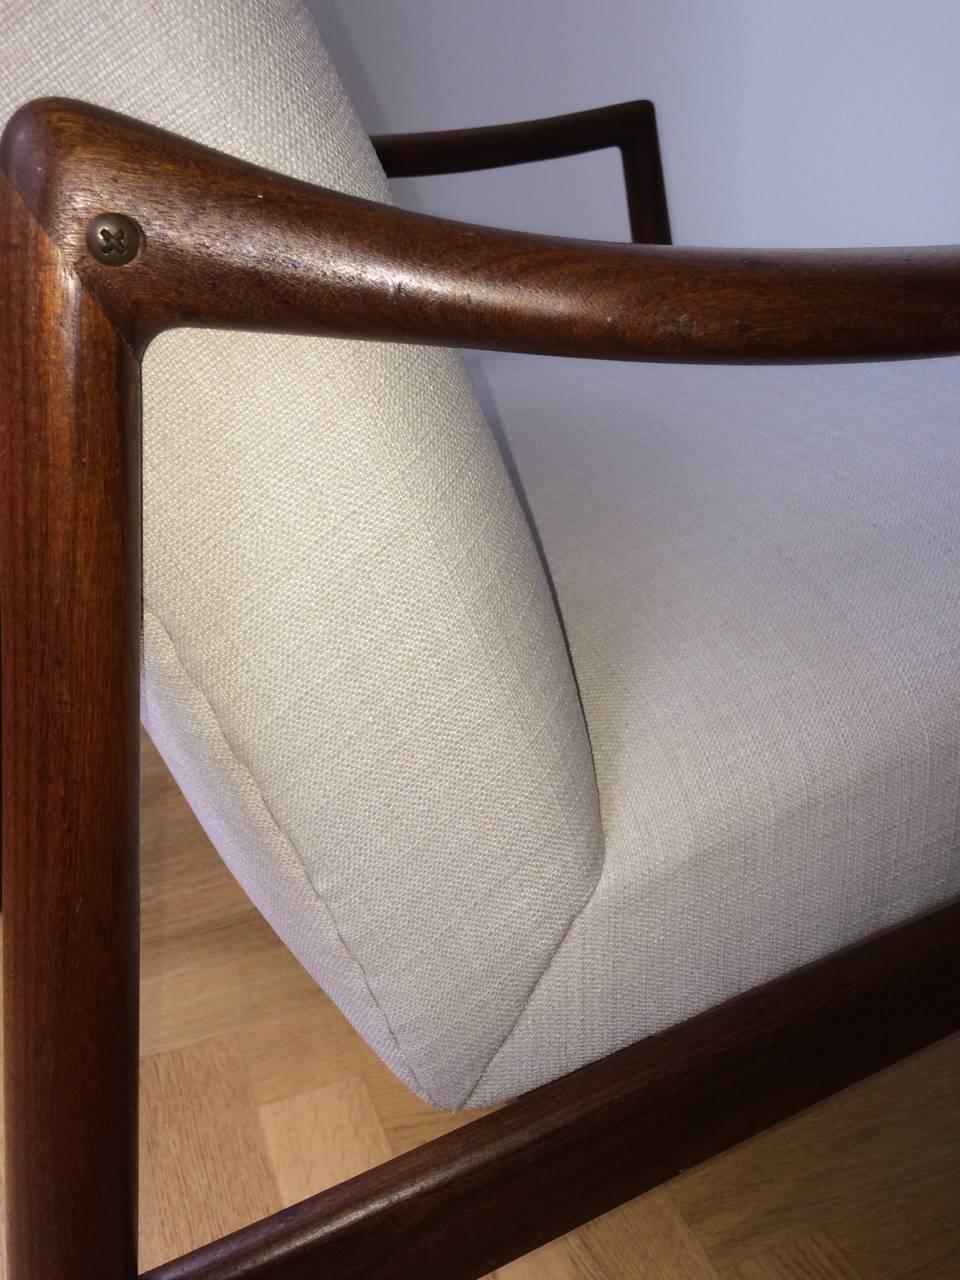 Mid-Century Teak Easy Chair by Hartmut Lohmeyer for Wilkhahn New Upholstery 1960 For Sale 1